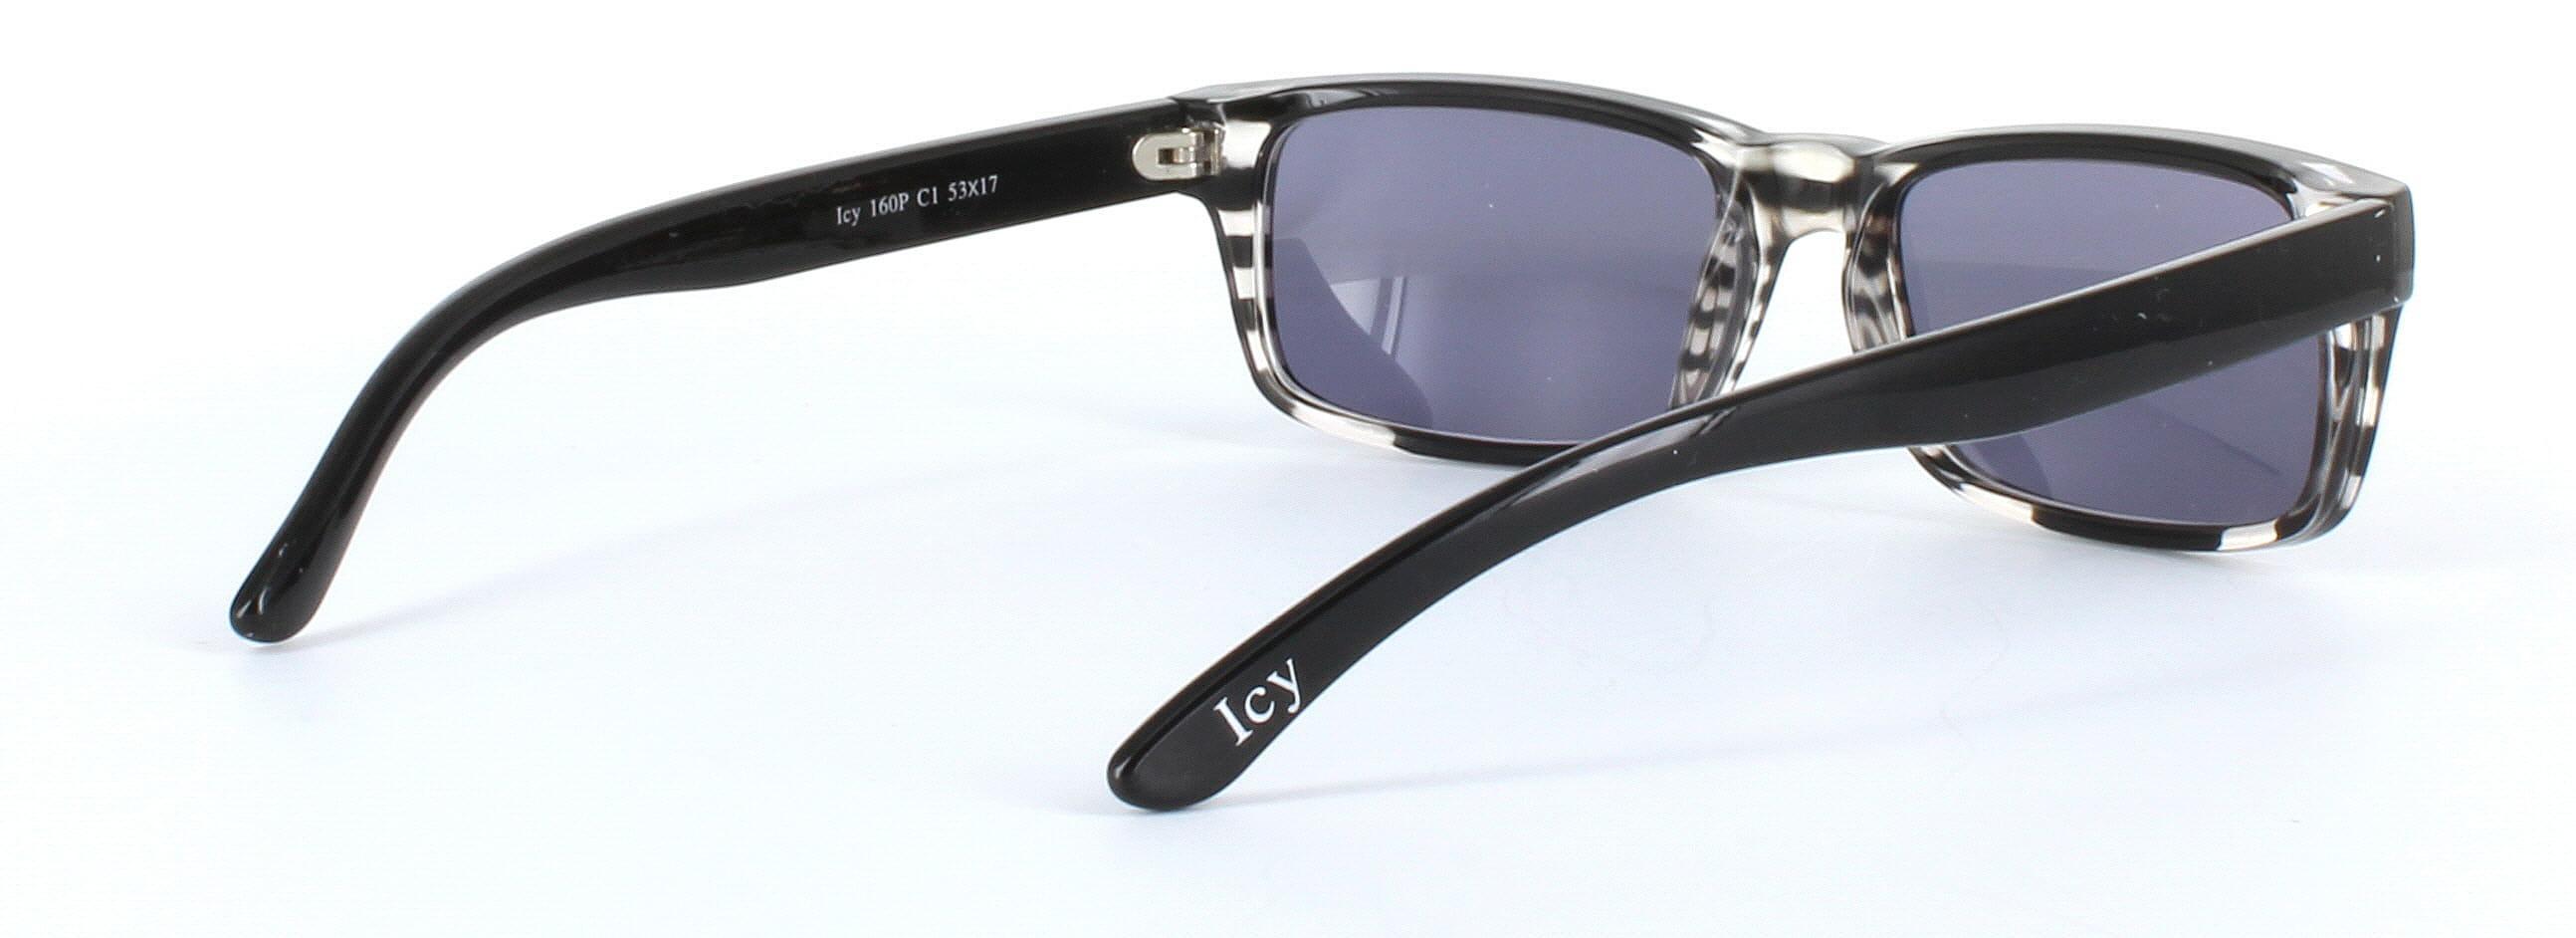 ICY 160 Grey Full Rim Rectangular Plastic Prescription Sunglasses - Image View 4